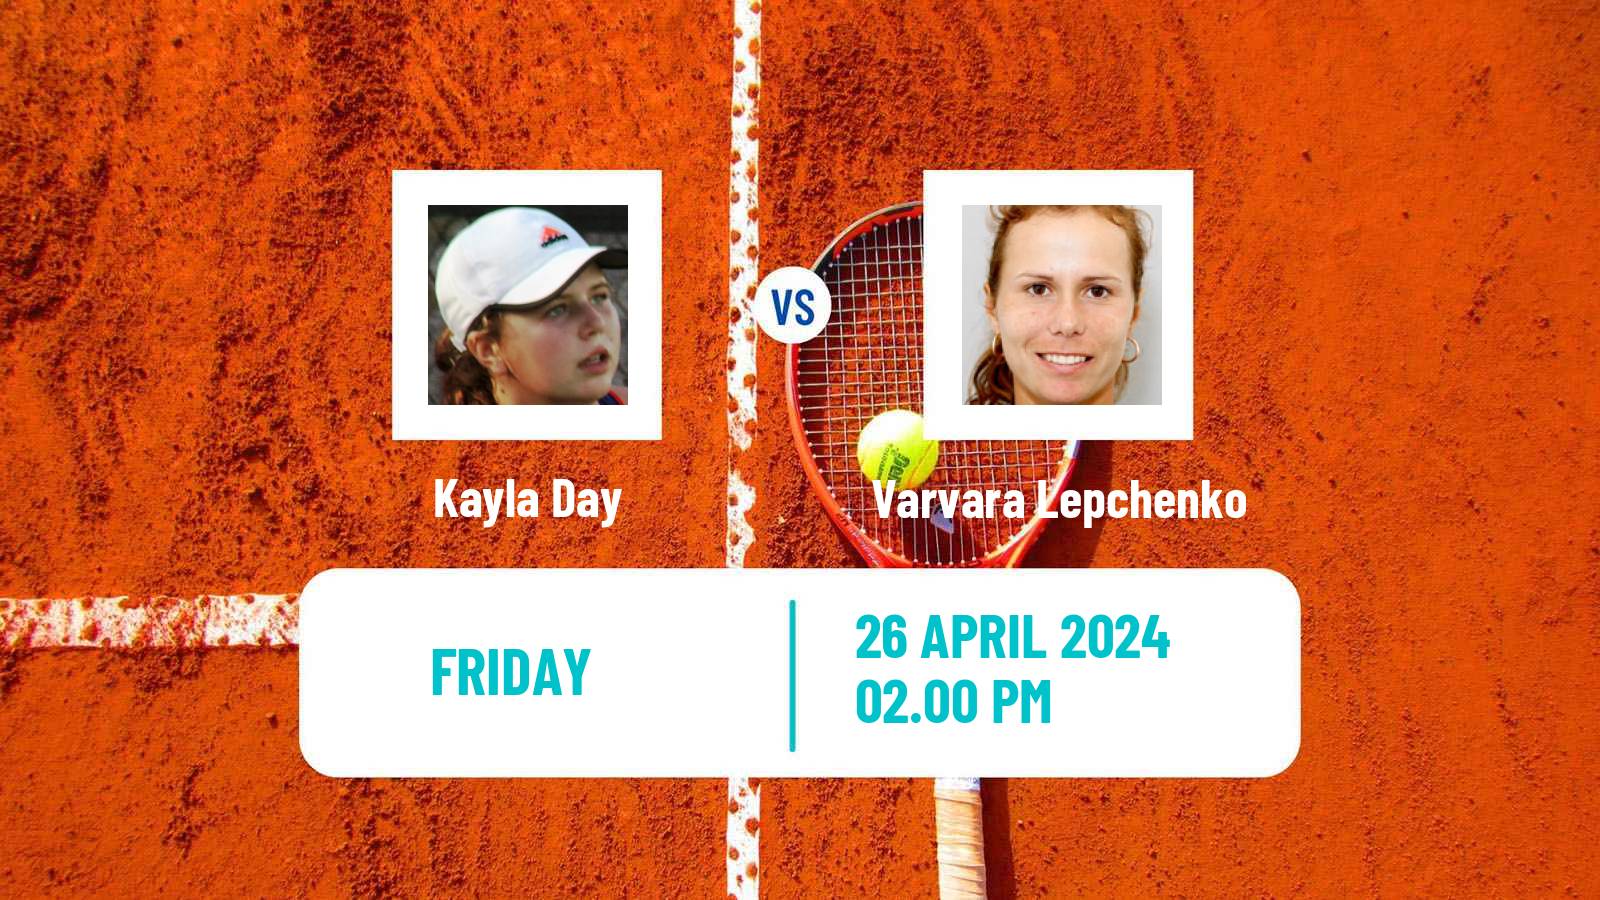 Tennis ITF W75 Charlottesville Va Women Kayla Day - Varvara Lepchenko